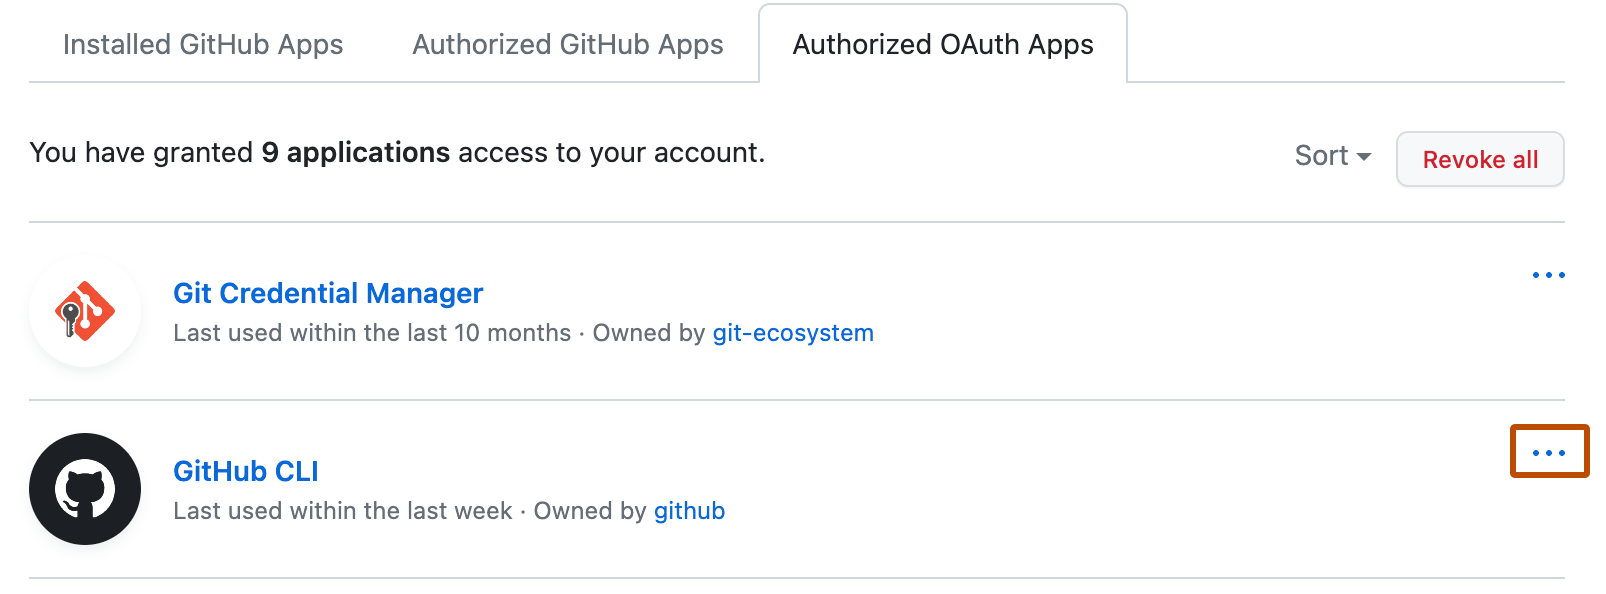 "권한 있는 OAuth apps" 탭의 스크린샷. 앱 이름의 오른쪽에 세 개의 가로 점 아이콘이 주황색 윤곽선으로 표시되어 있습니다.